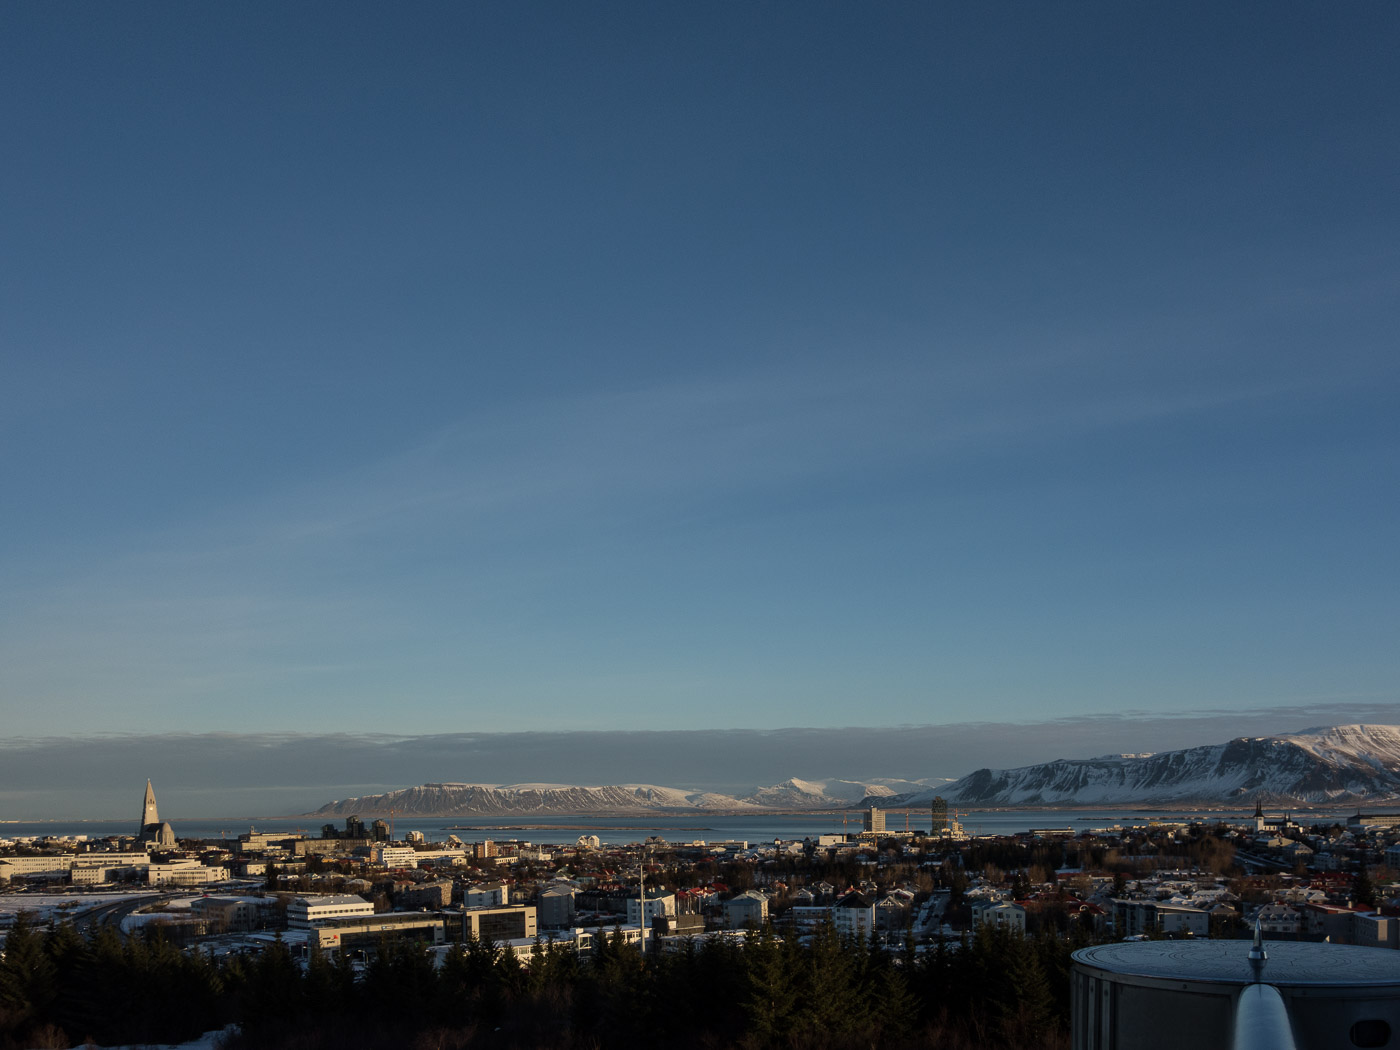 Reykjavík. Miscellaneous XCIV. - . (1 till 29 February 2016)